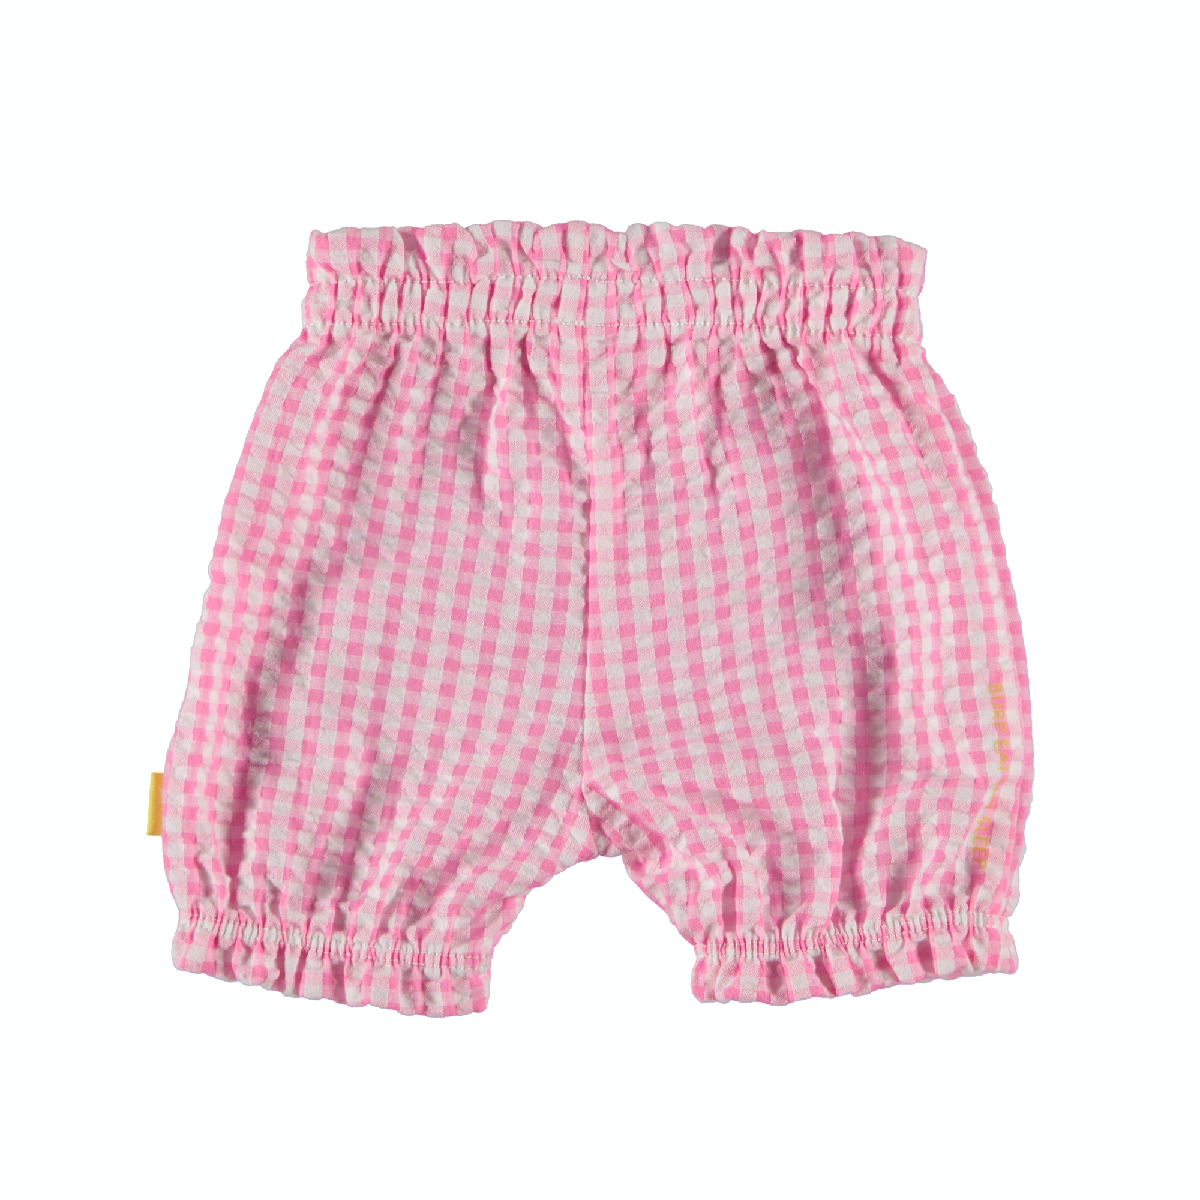 Meisjes Shorts Vichy van B.E.S.S. in de kleur Pink in maat 68.